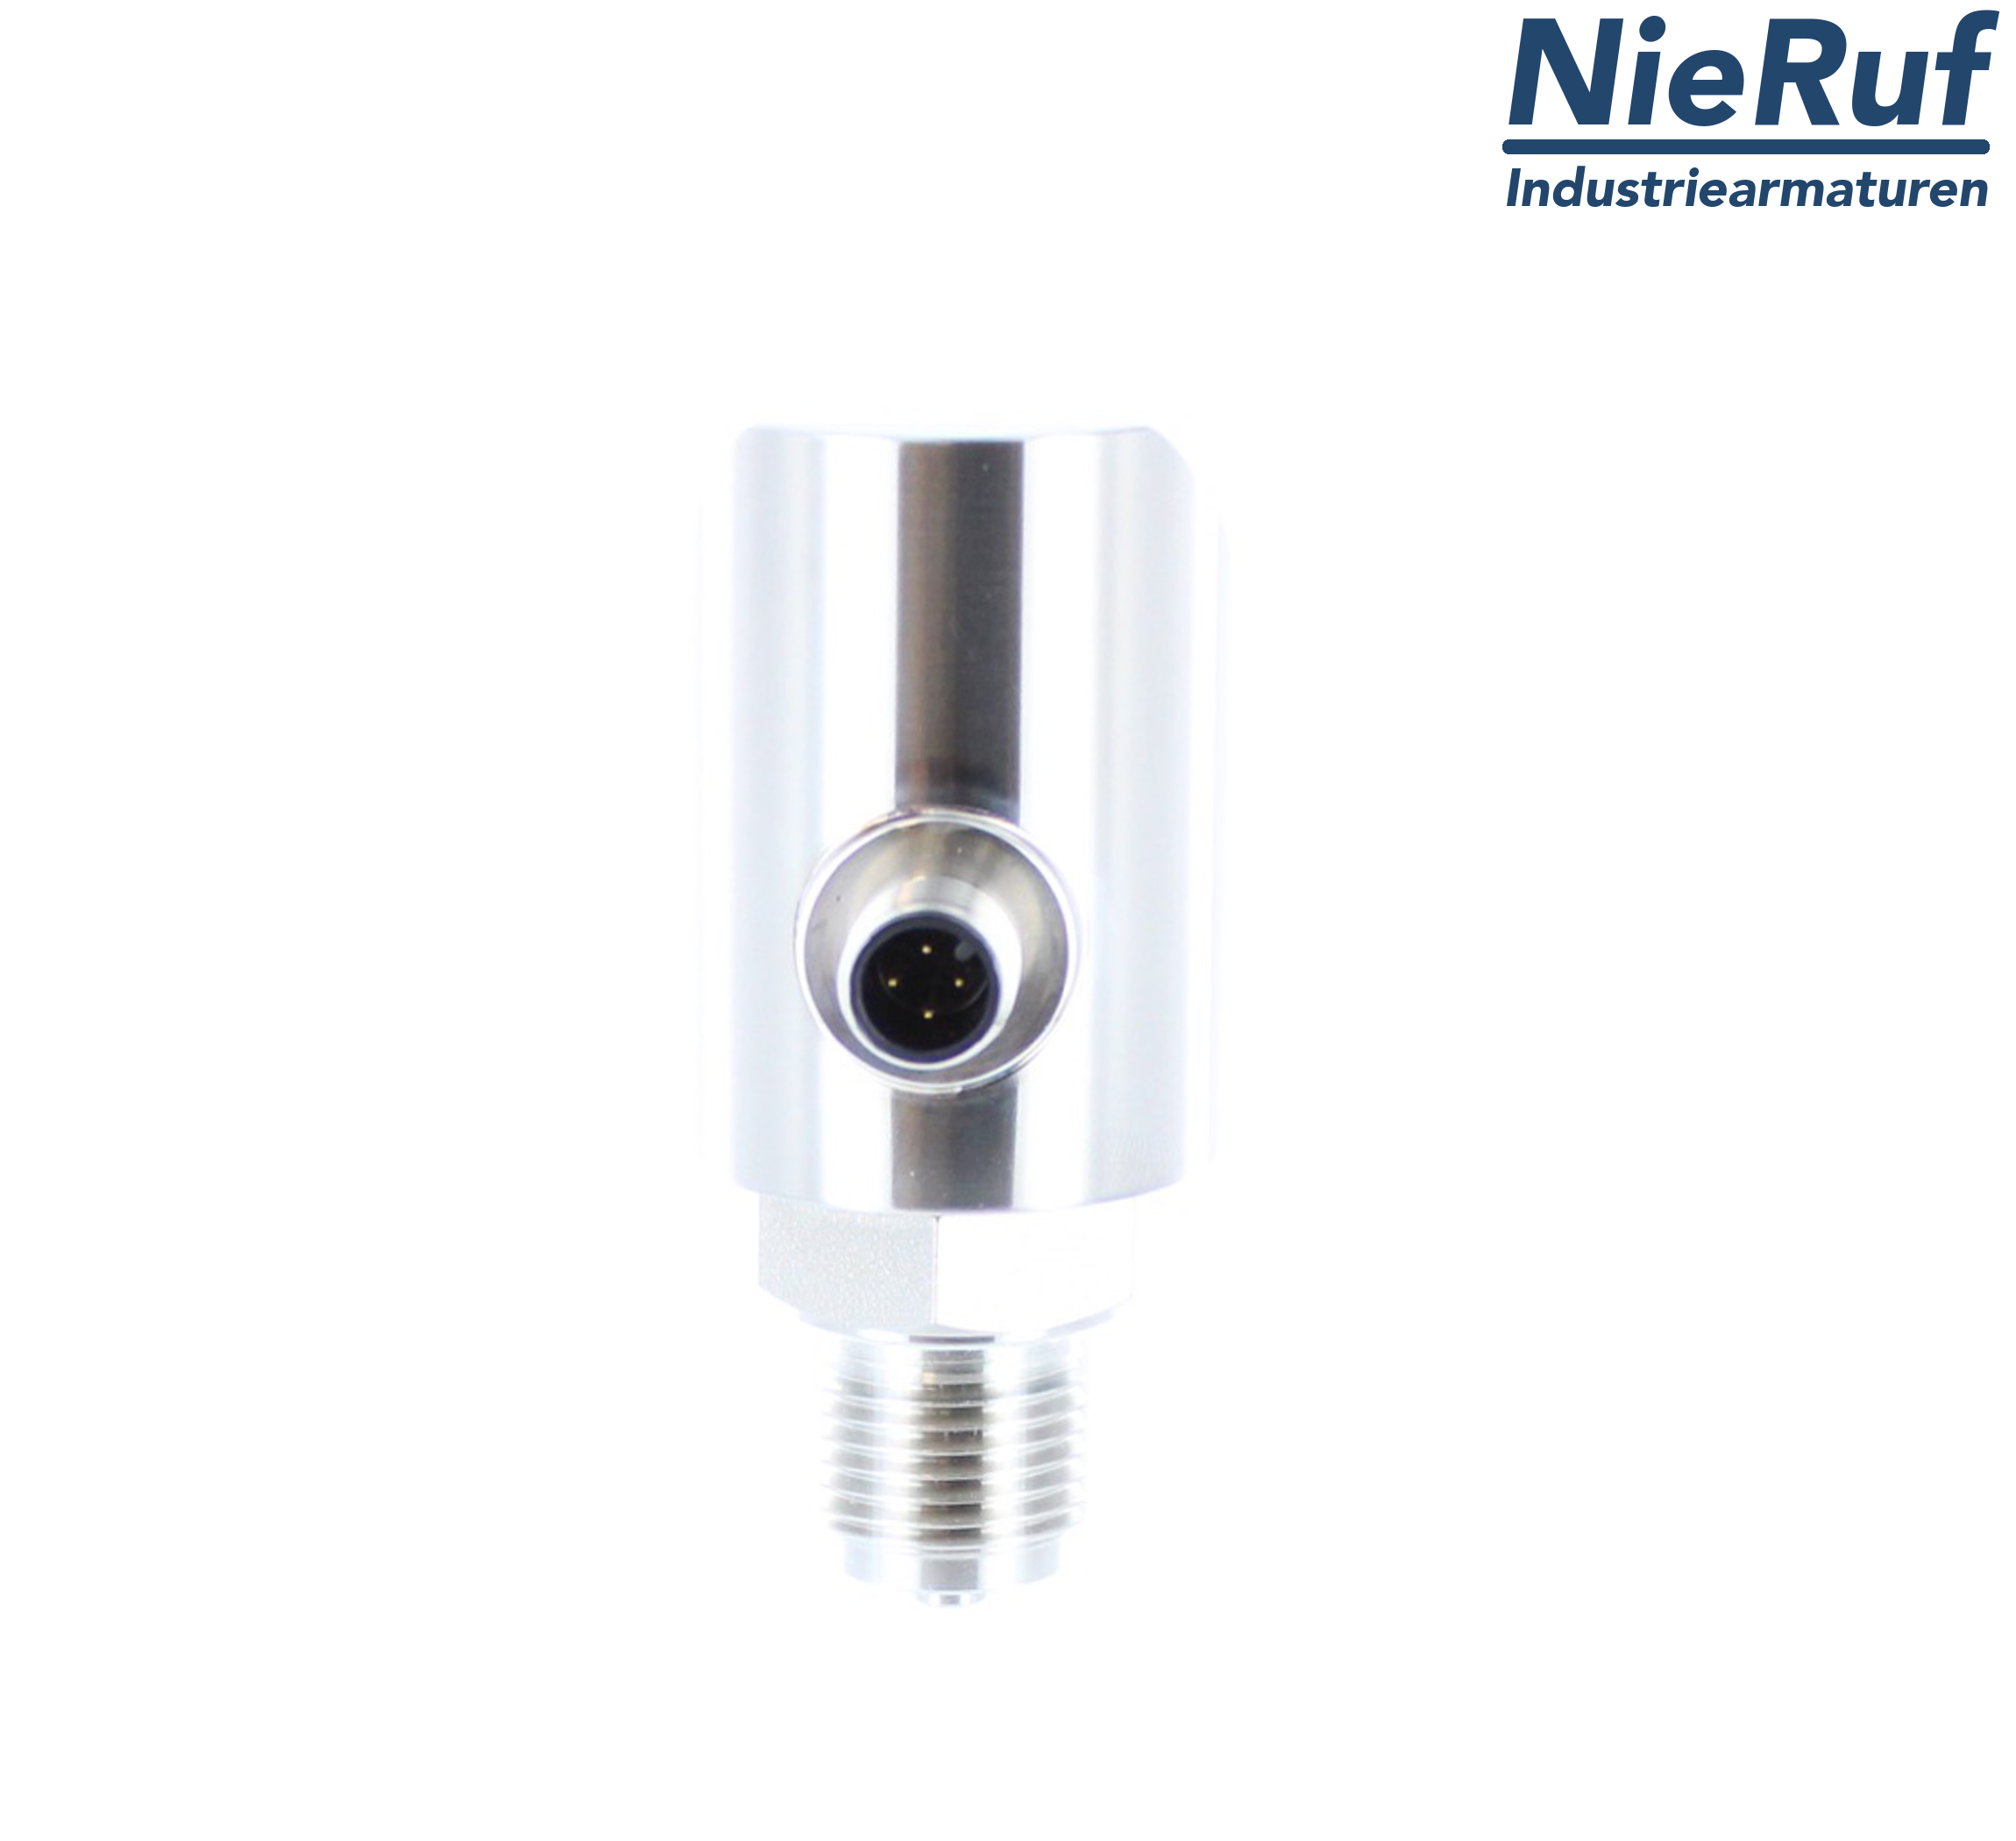 digital pressure sensor G 1/4" B 5-wire: 2xPNP, 1x4 - 20mA FPM 0,0 - 2,5 bar